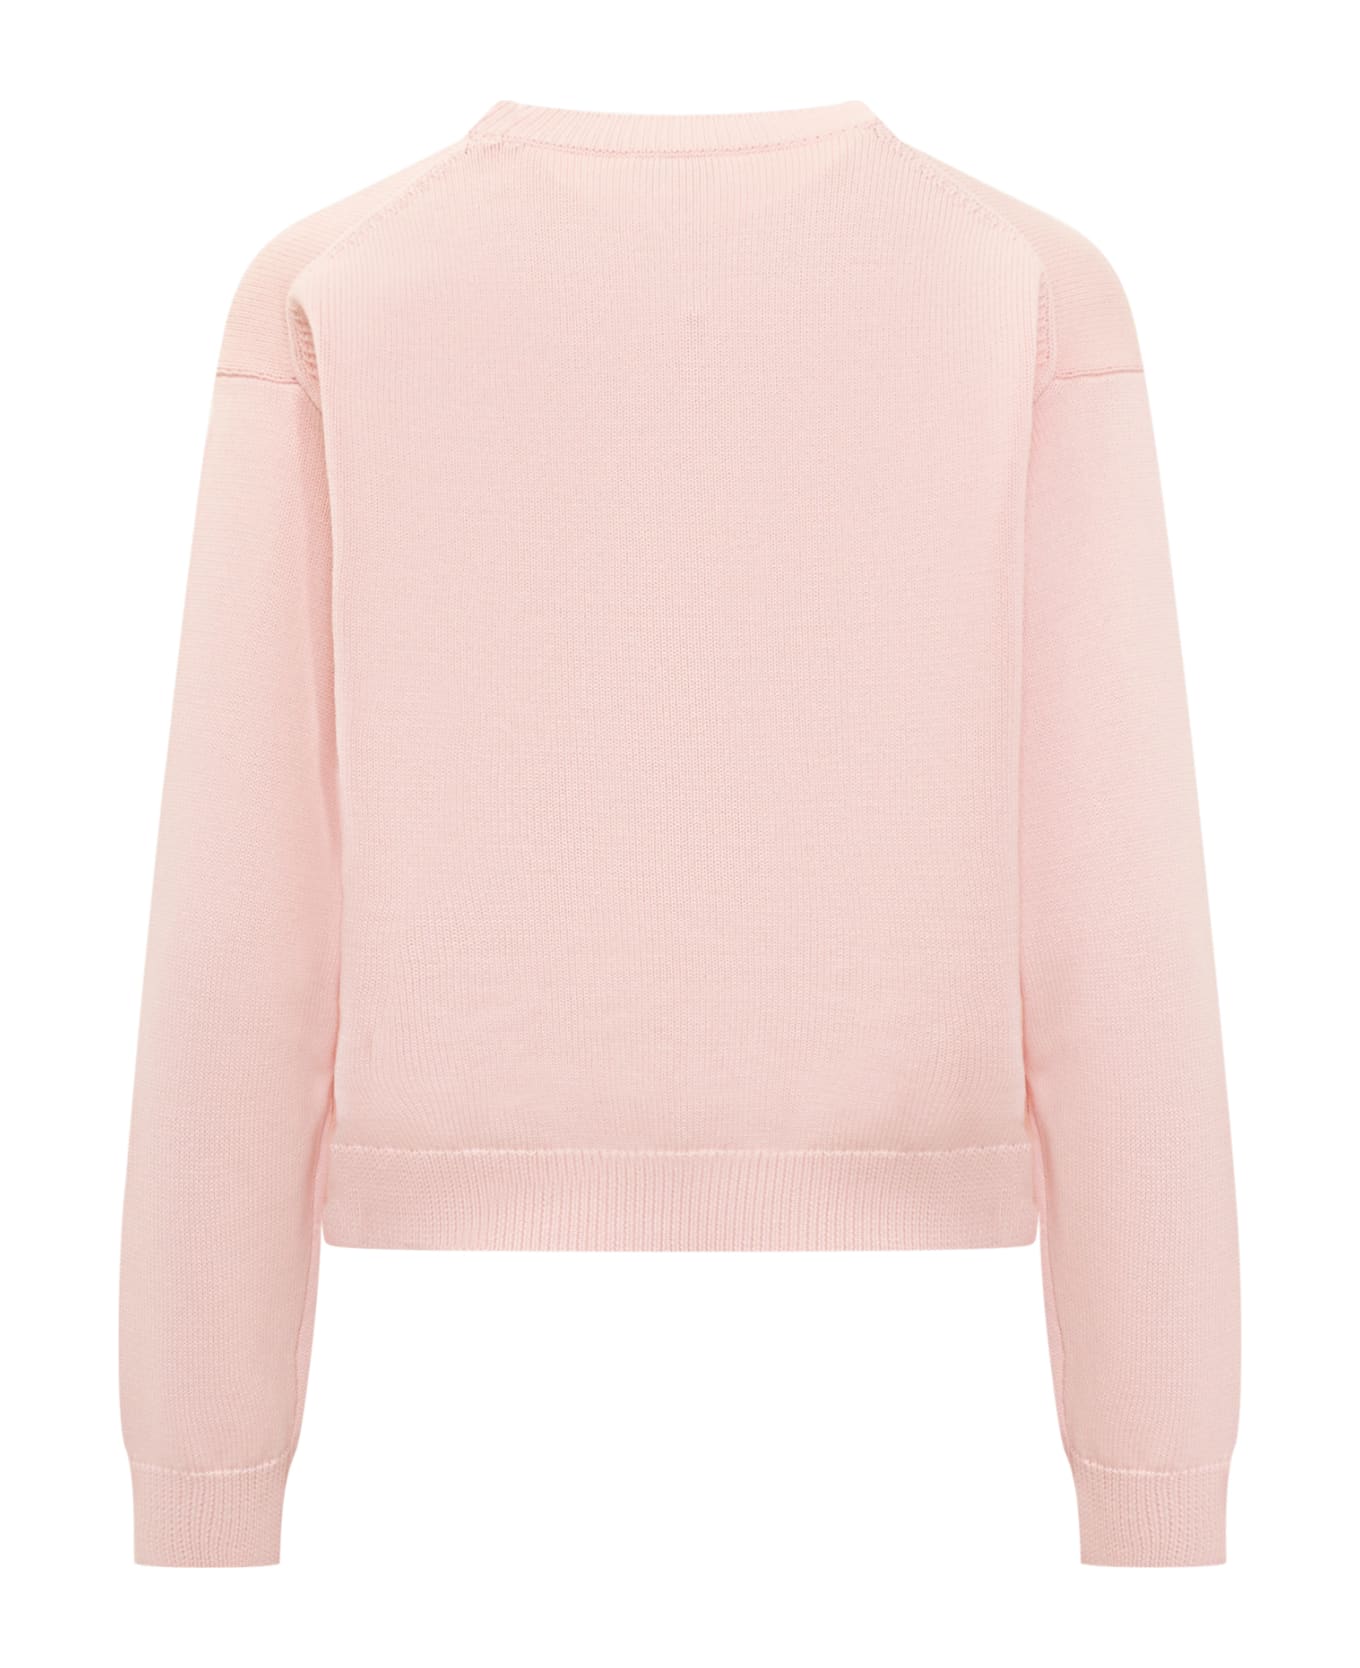 Kenzo Boke Flower Sweater - Faded pink